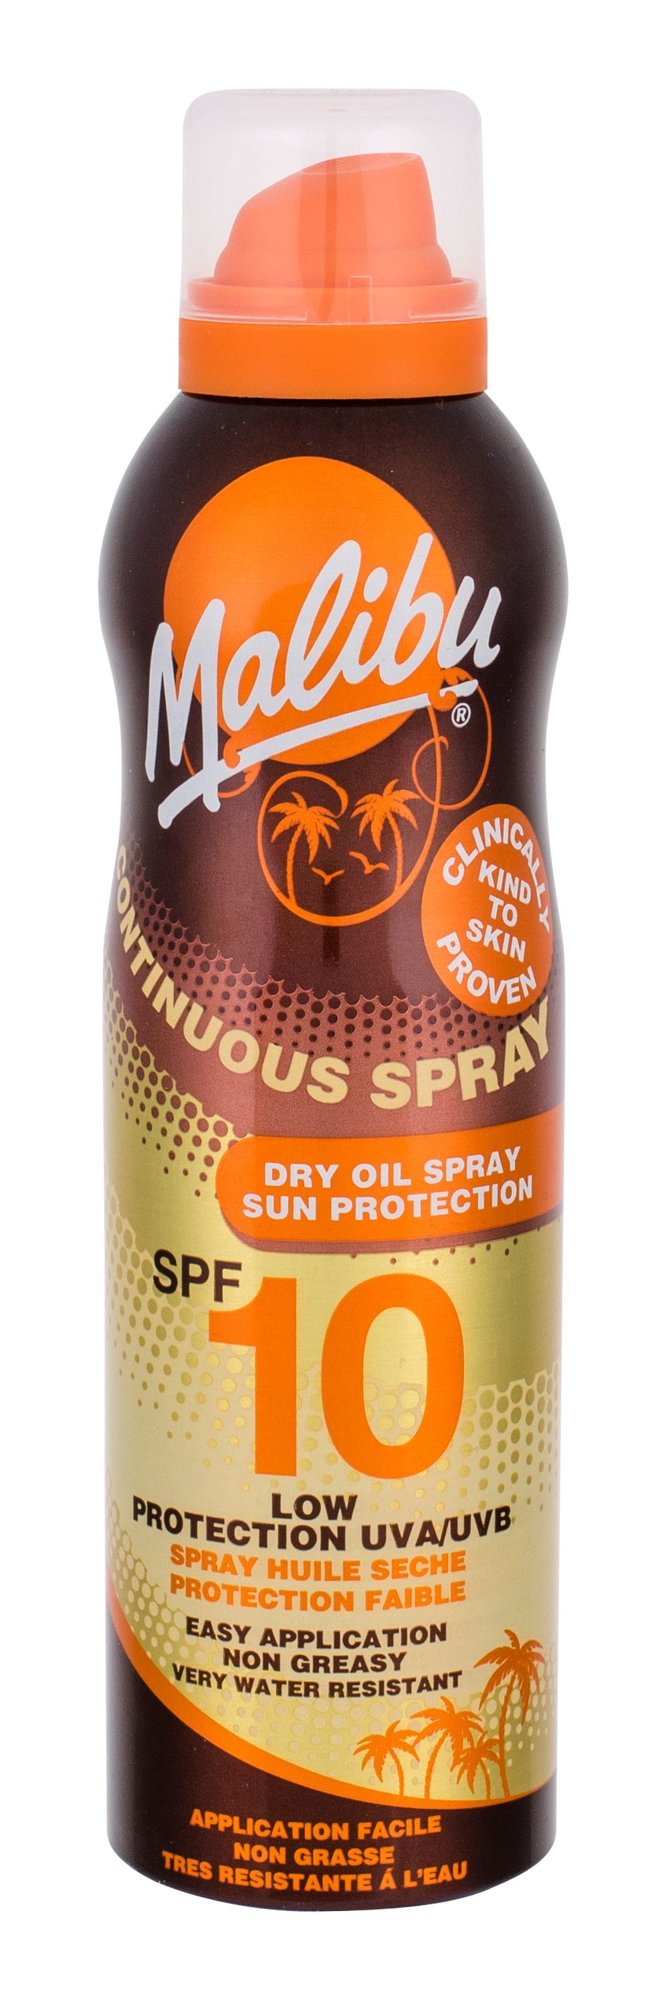 Malibu Continuous Spray Dry Oil įdegio losjonas